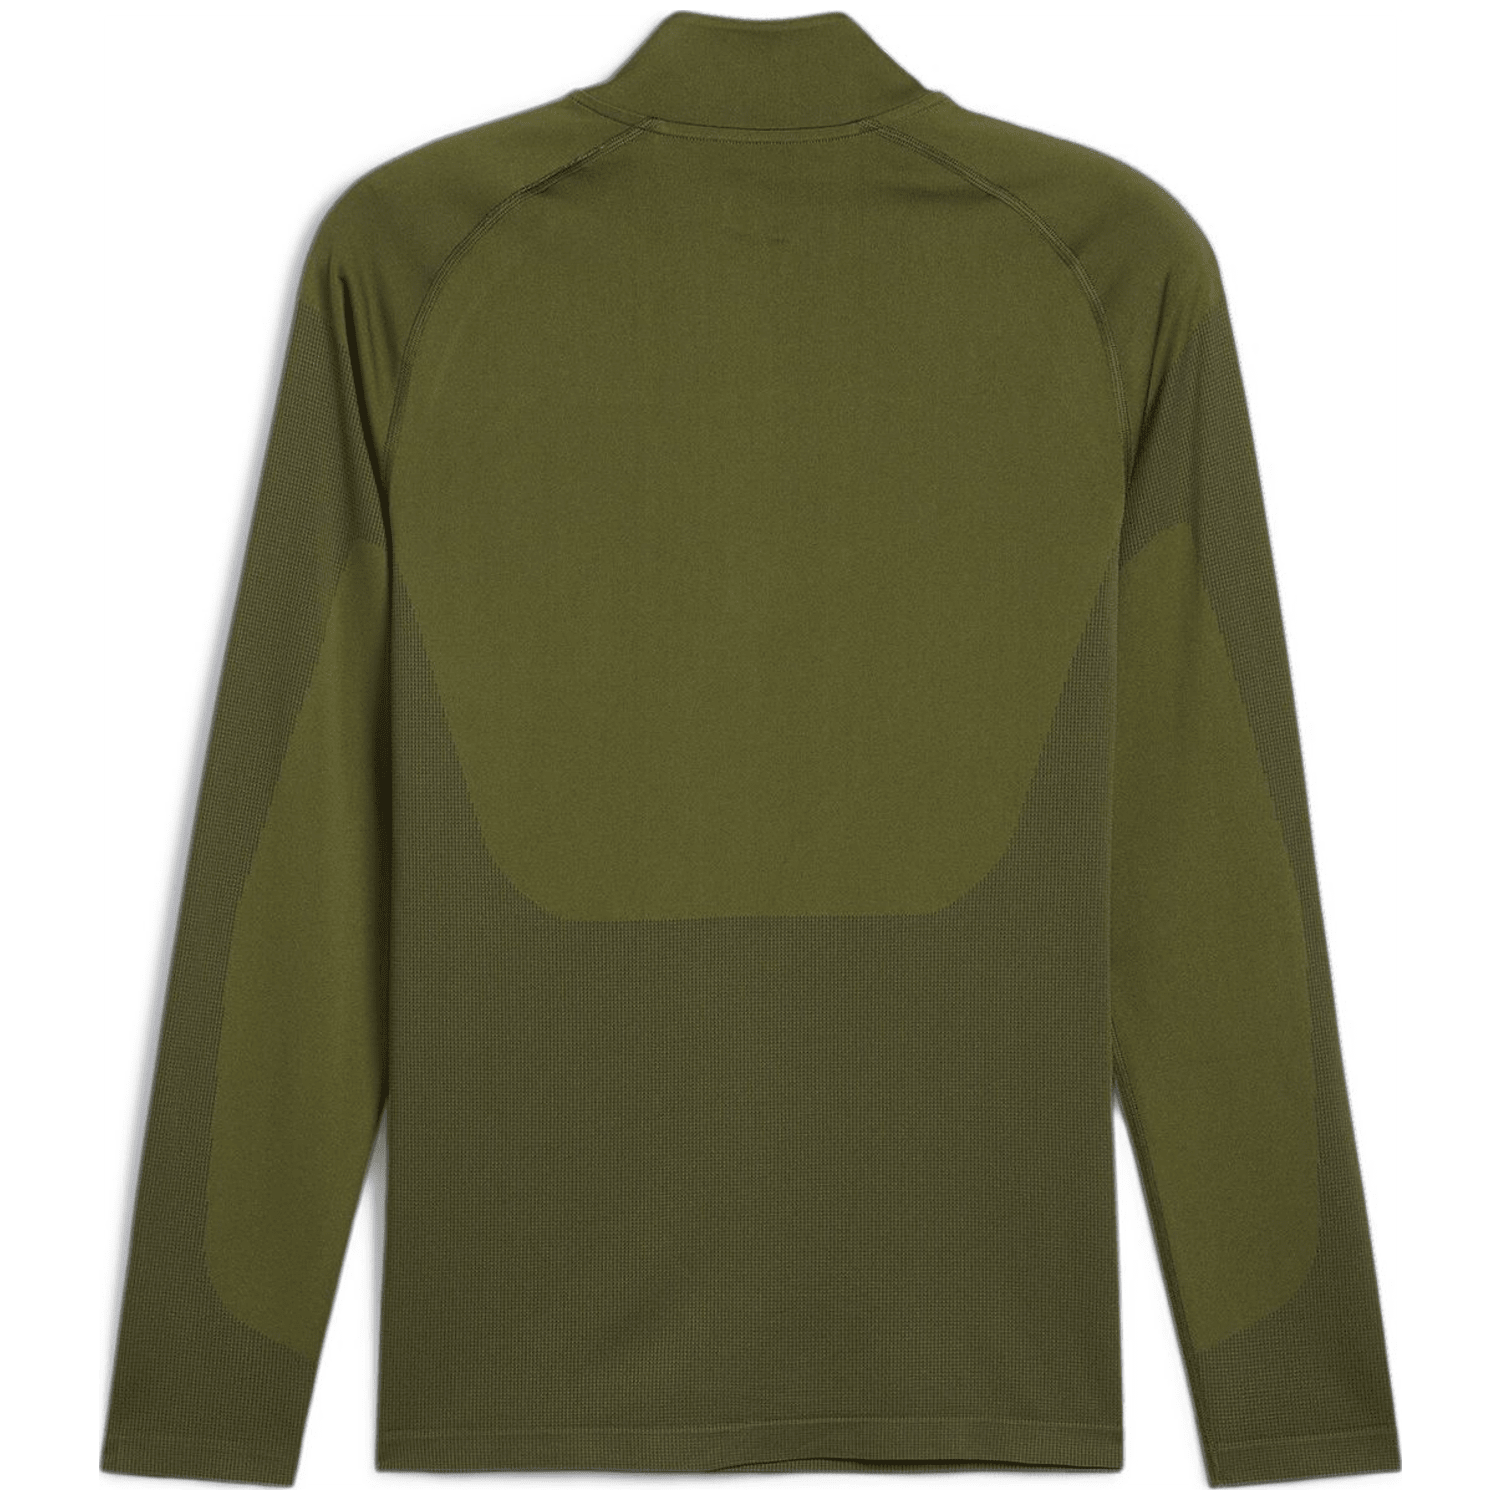 Puma Formknit Seamless ¼ Zip Herren Sweatshirt